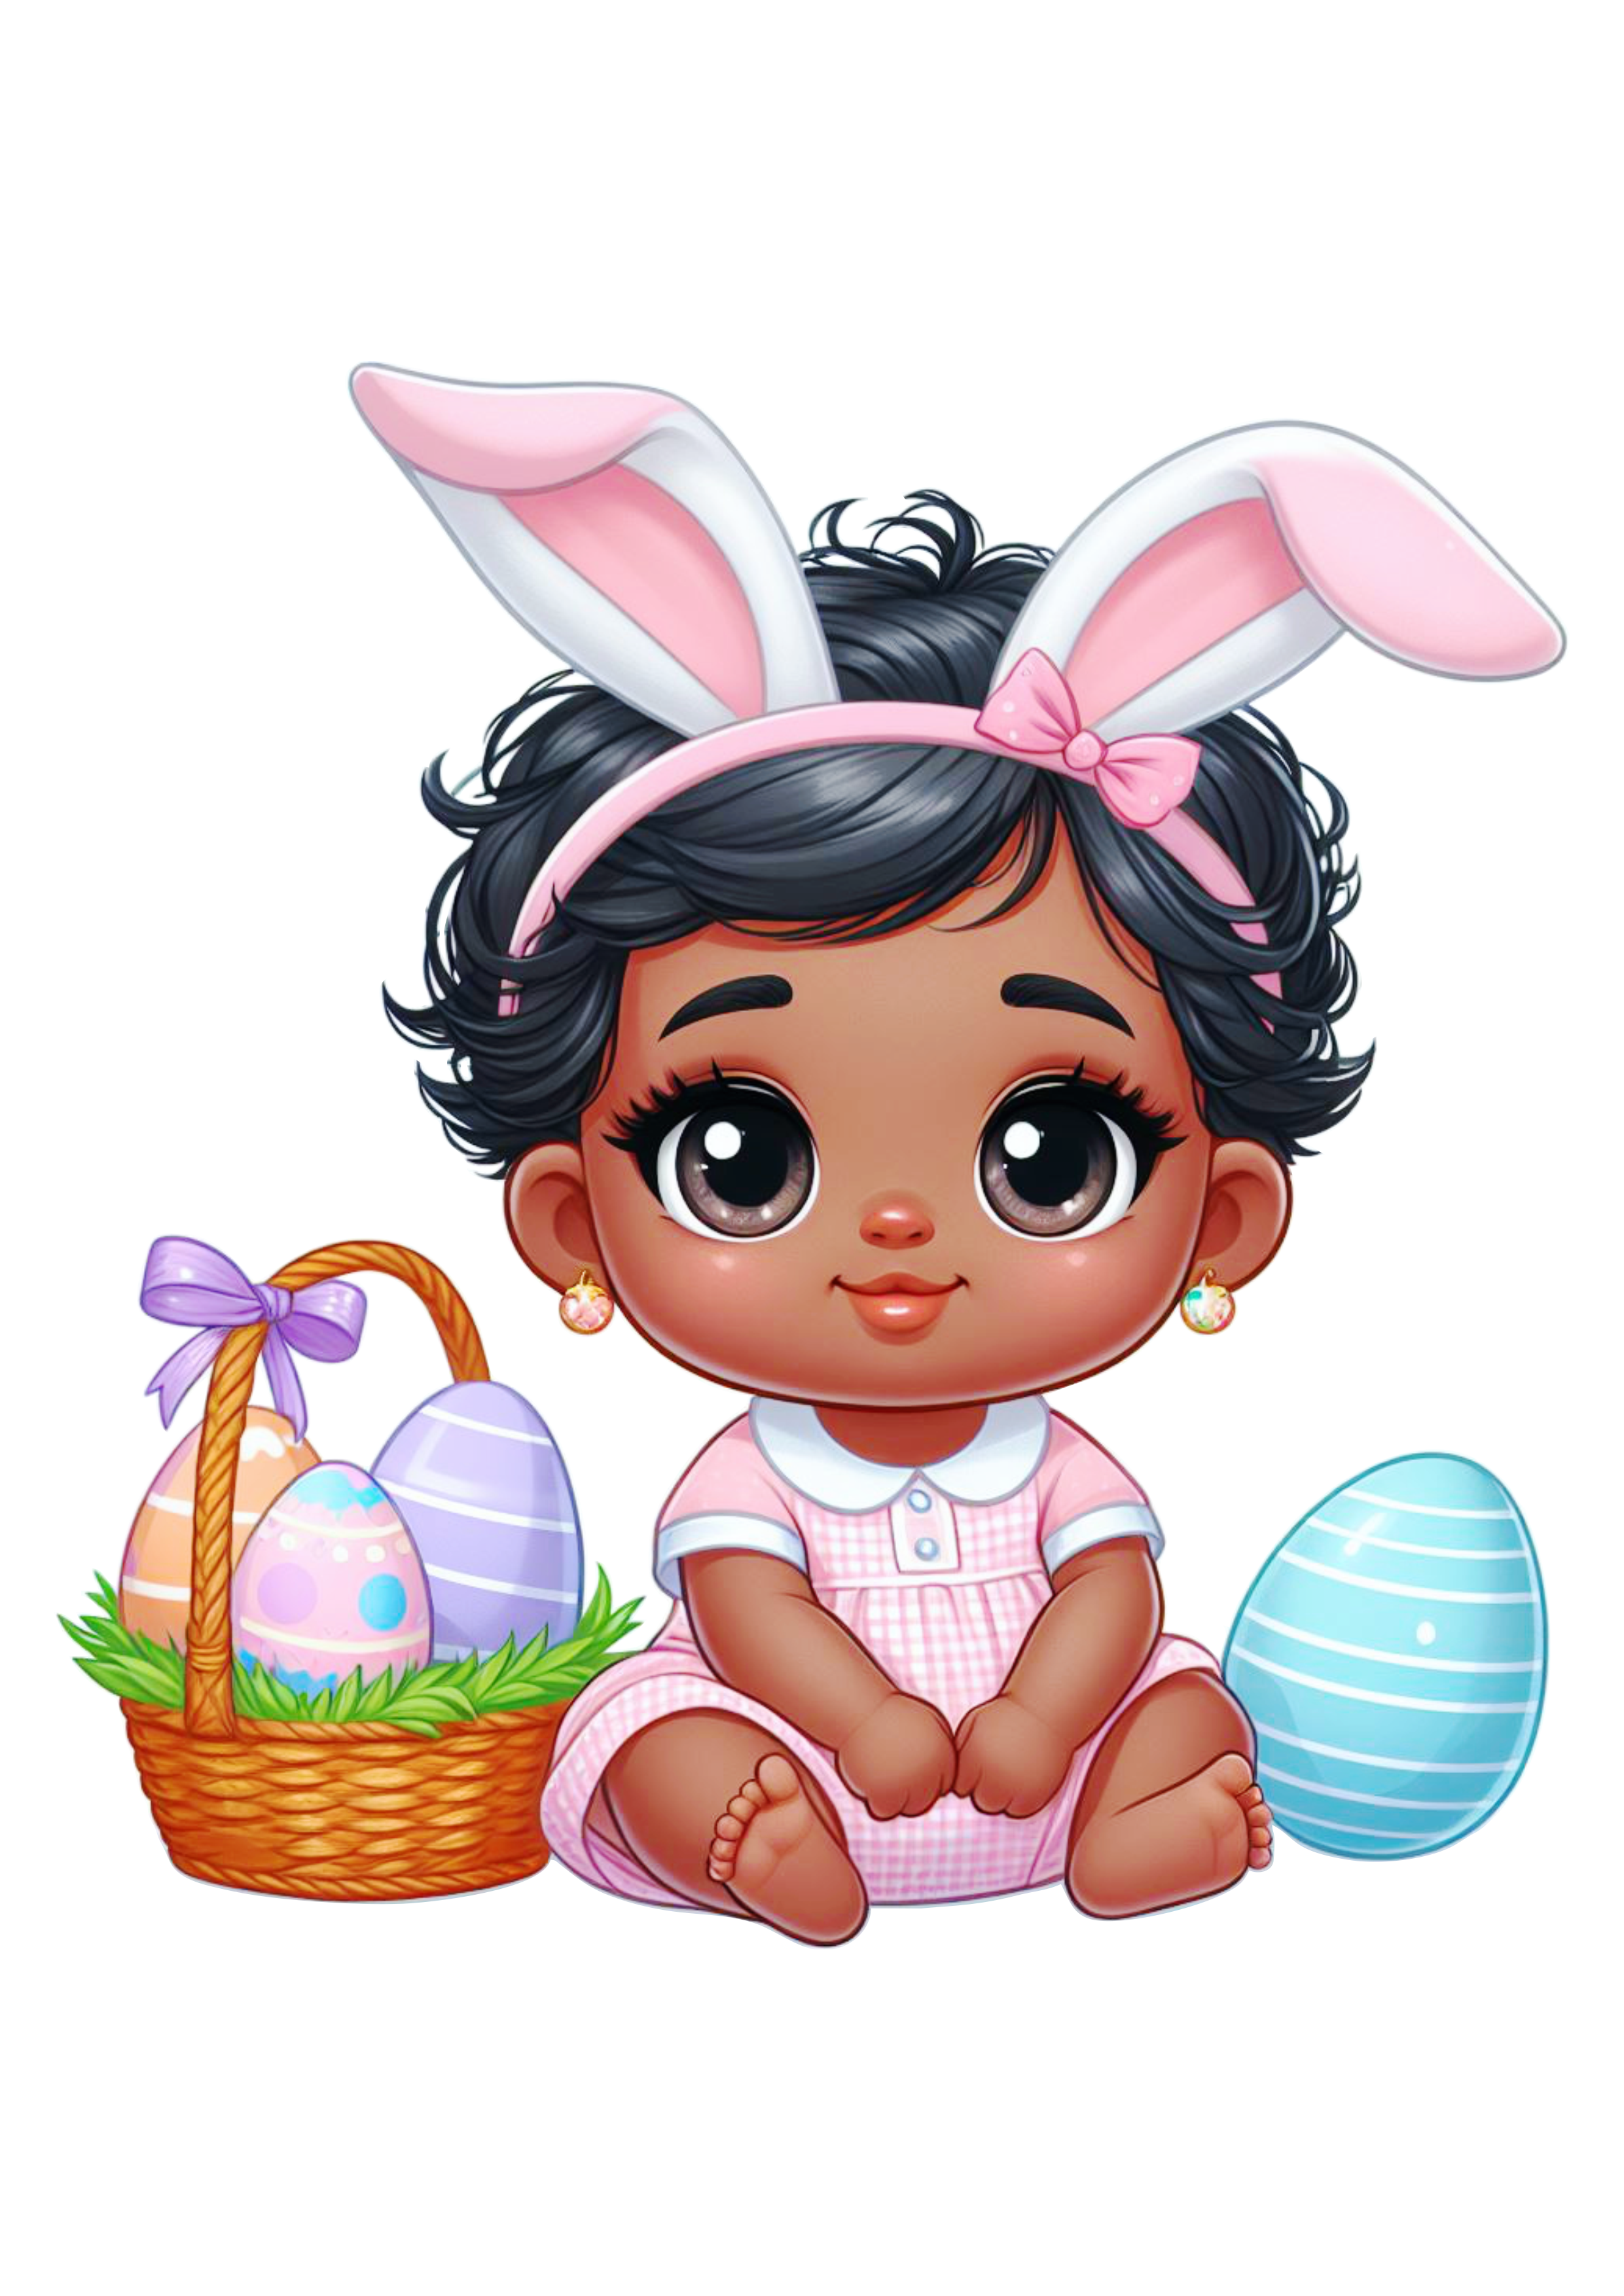 Páscoa menina moreninha com fantasia de coelho desenho infantil fofinho cesta de ovos de chocolate png